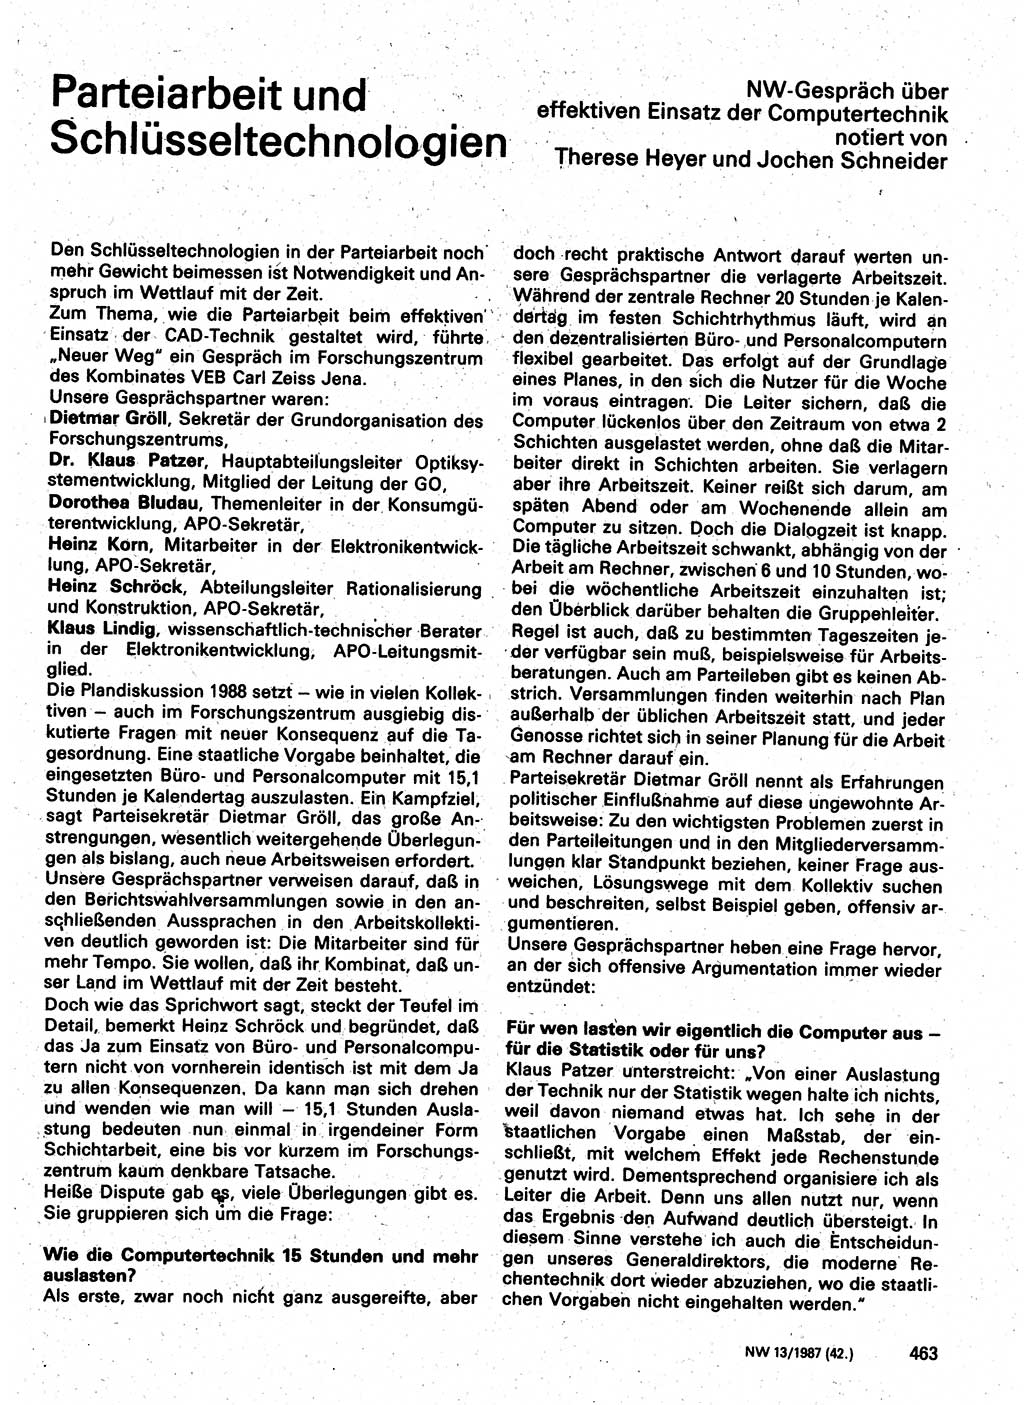 Neuer Weg (NW), Organ des Zentralkomitees (ZK) der SED (Sozialistische Einheitspartei Deutschlands) für Fragen des Parteilebens, 42. Jahrgang [Deutsche Demokratische Republik (DDR)] 1987, Seite 463 (NW ZK SED DDR 1987, S. 463)